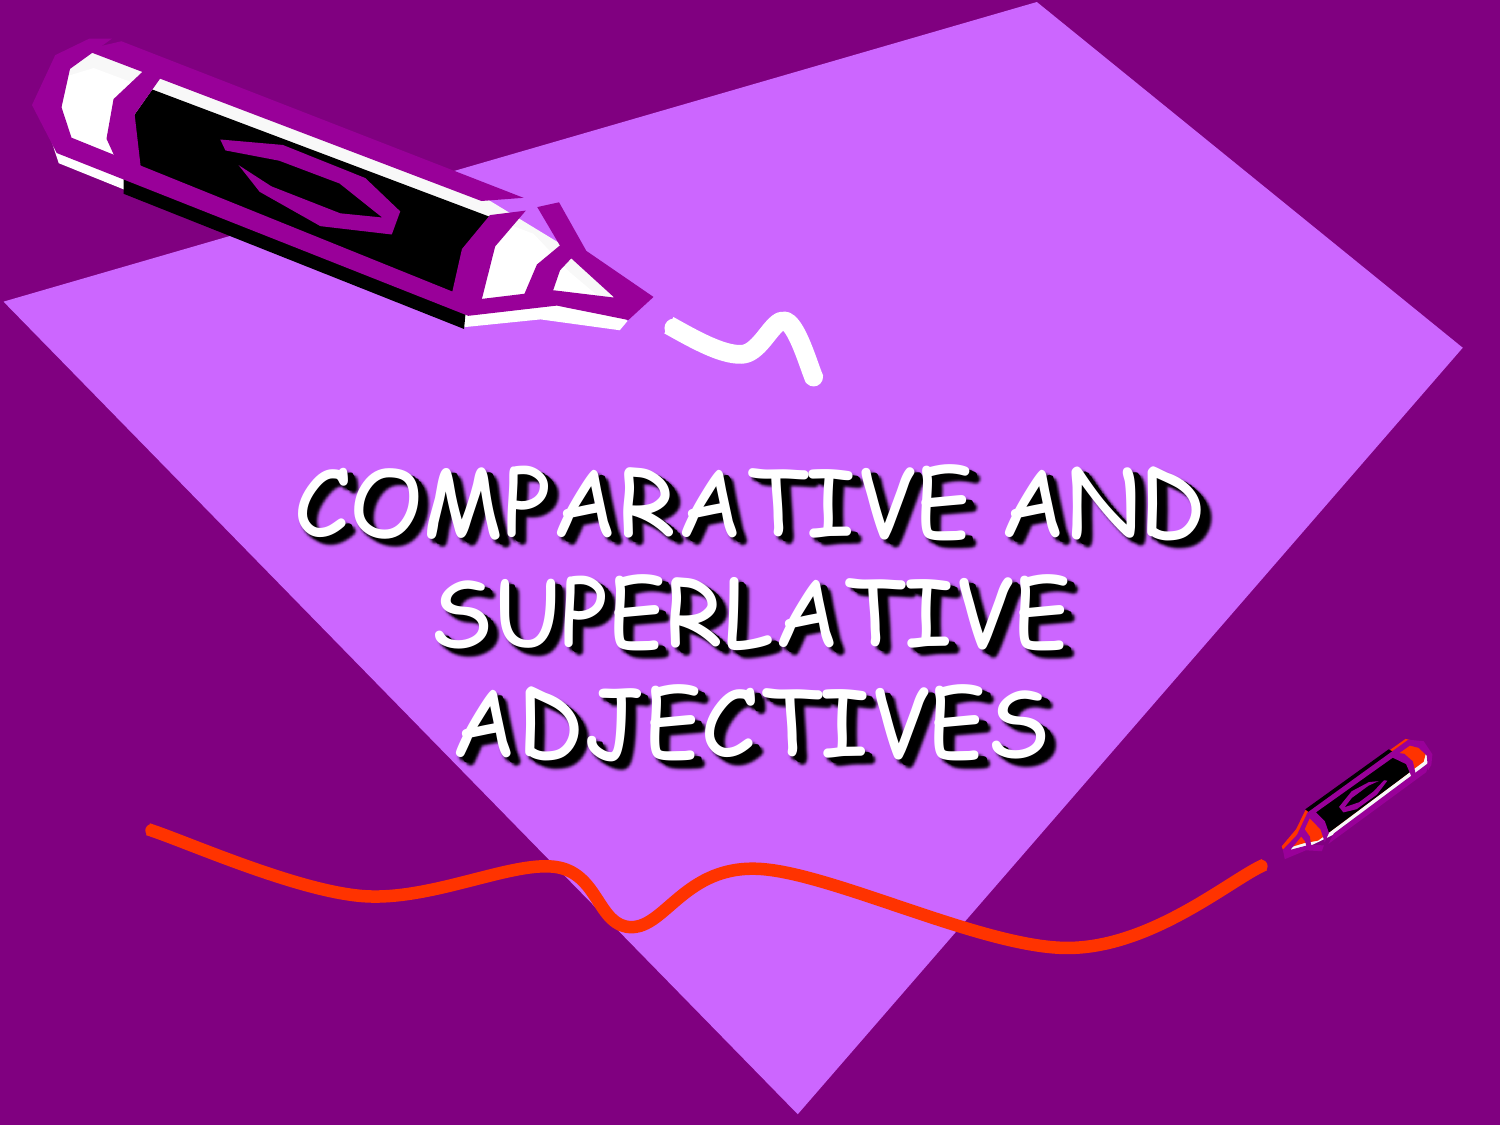 Жизнь без звуков. Азбука разговора фонариком. Хорошего урока. Superlative and Comparative adjectives for sentences.